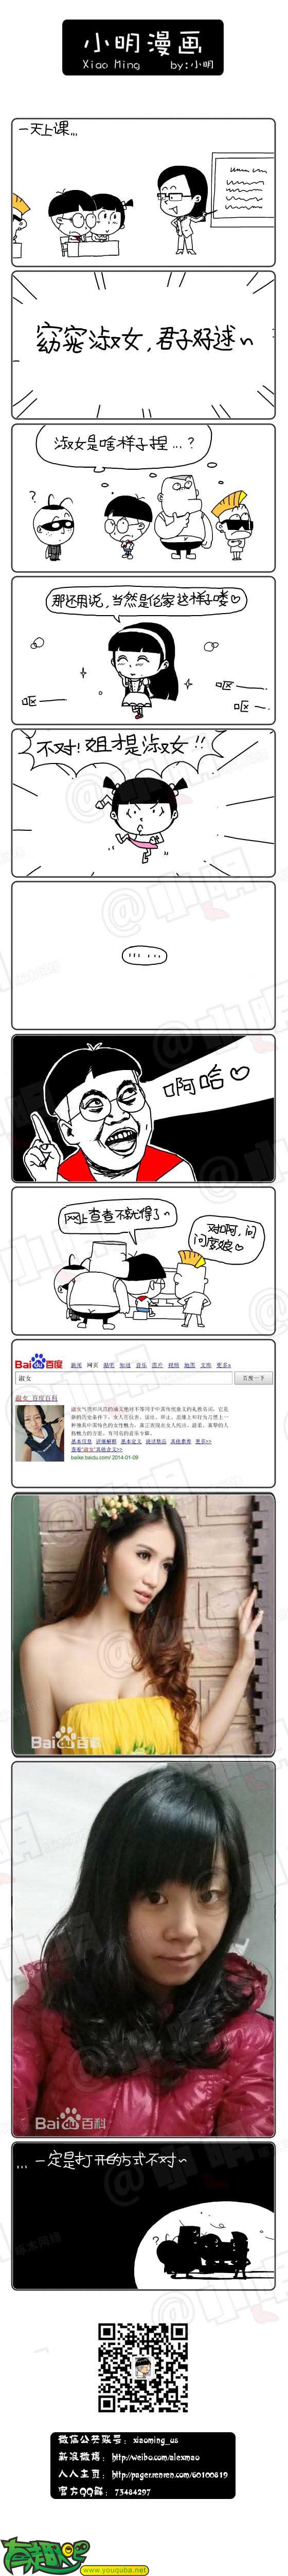 小明系列漫画:谁能告诉我什么样子才是真正的淑女呢？